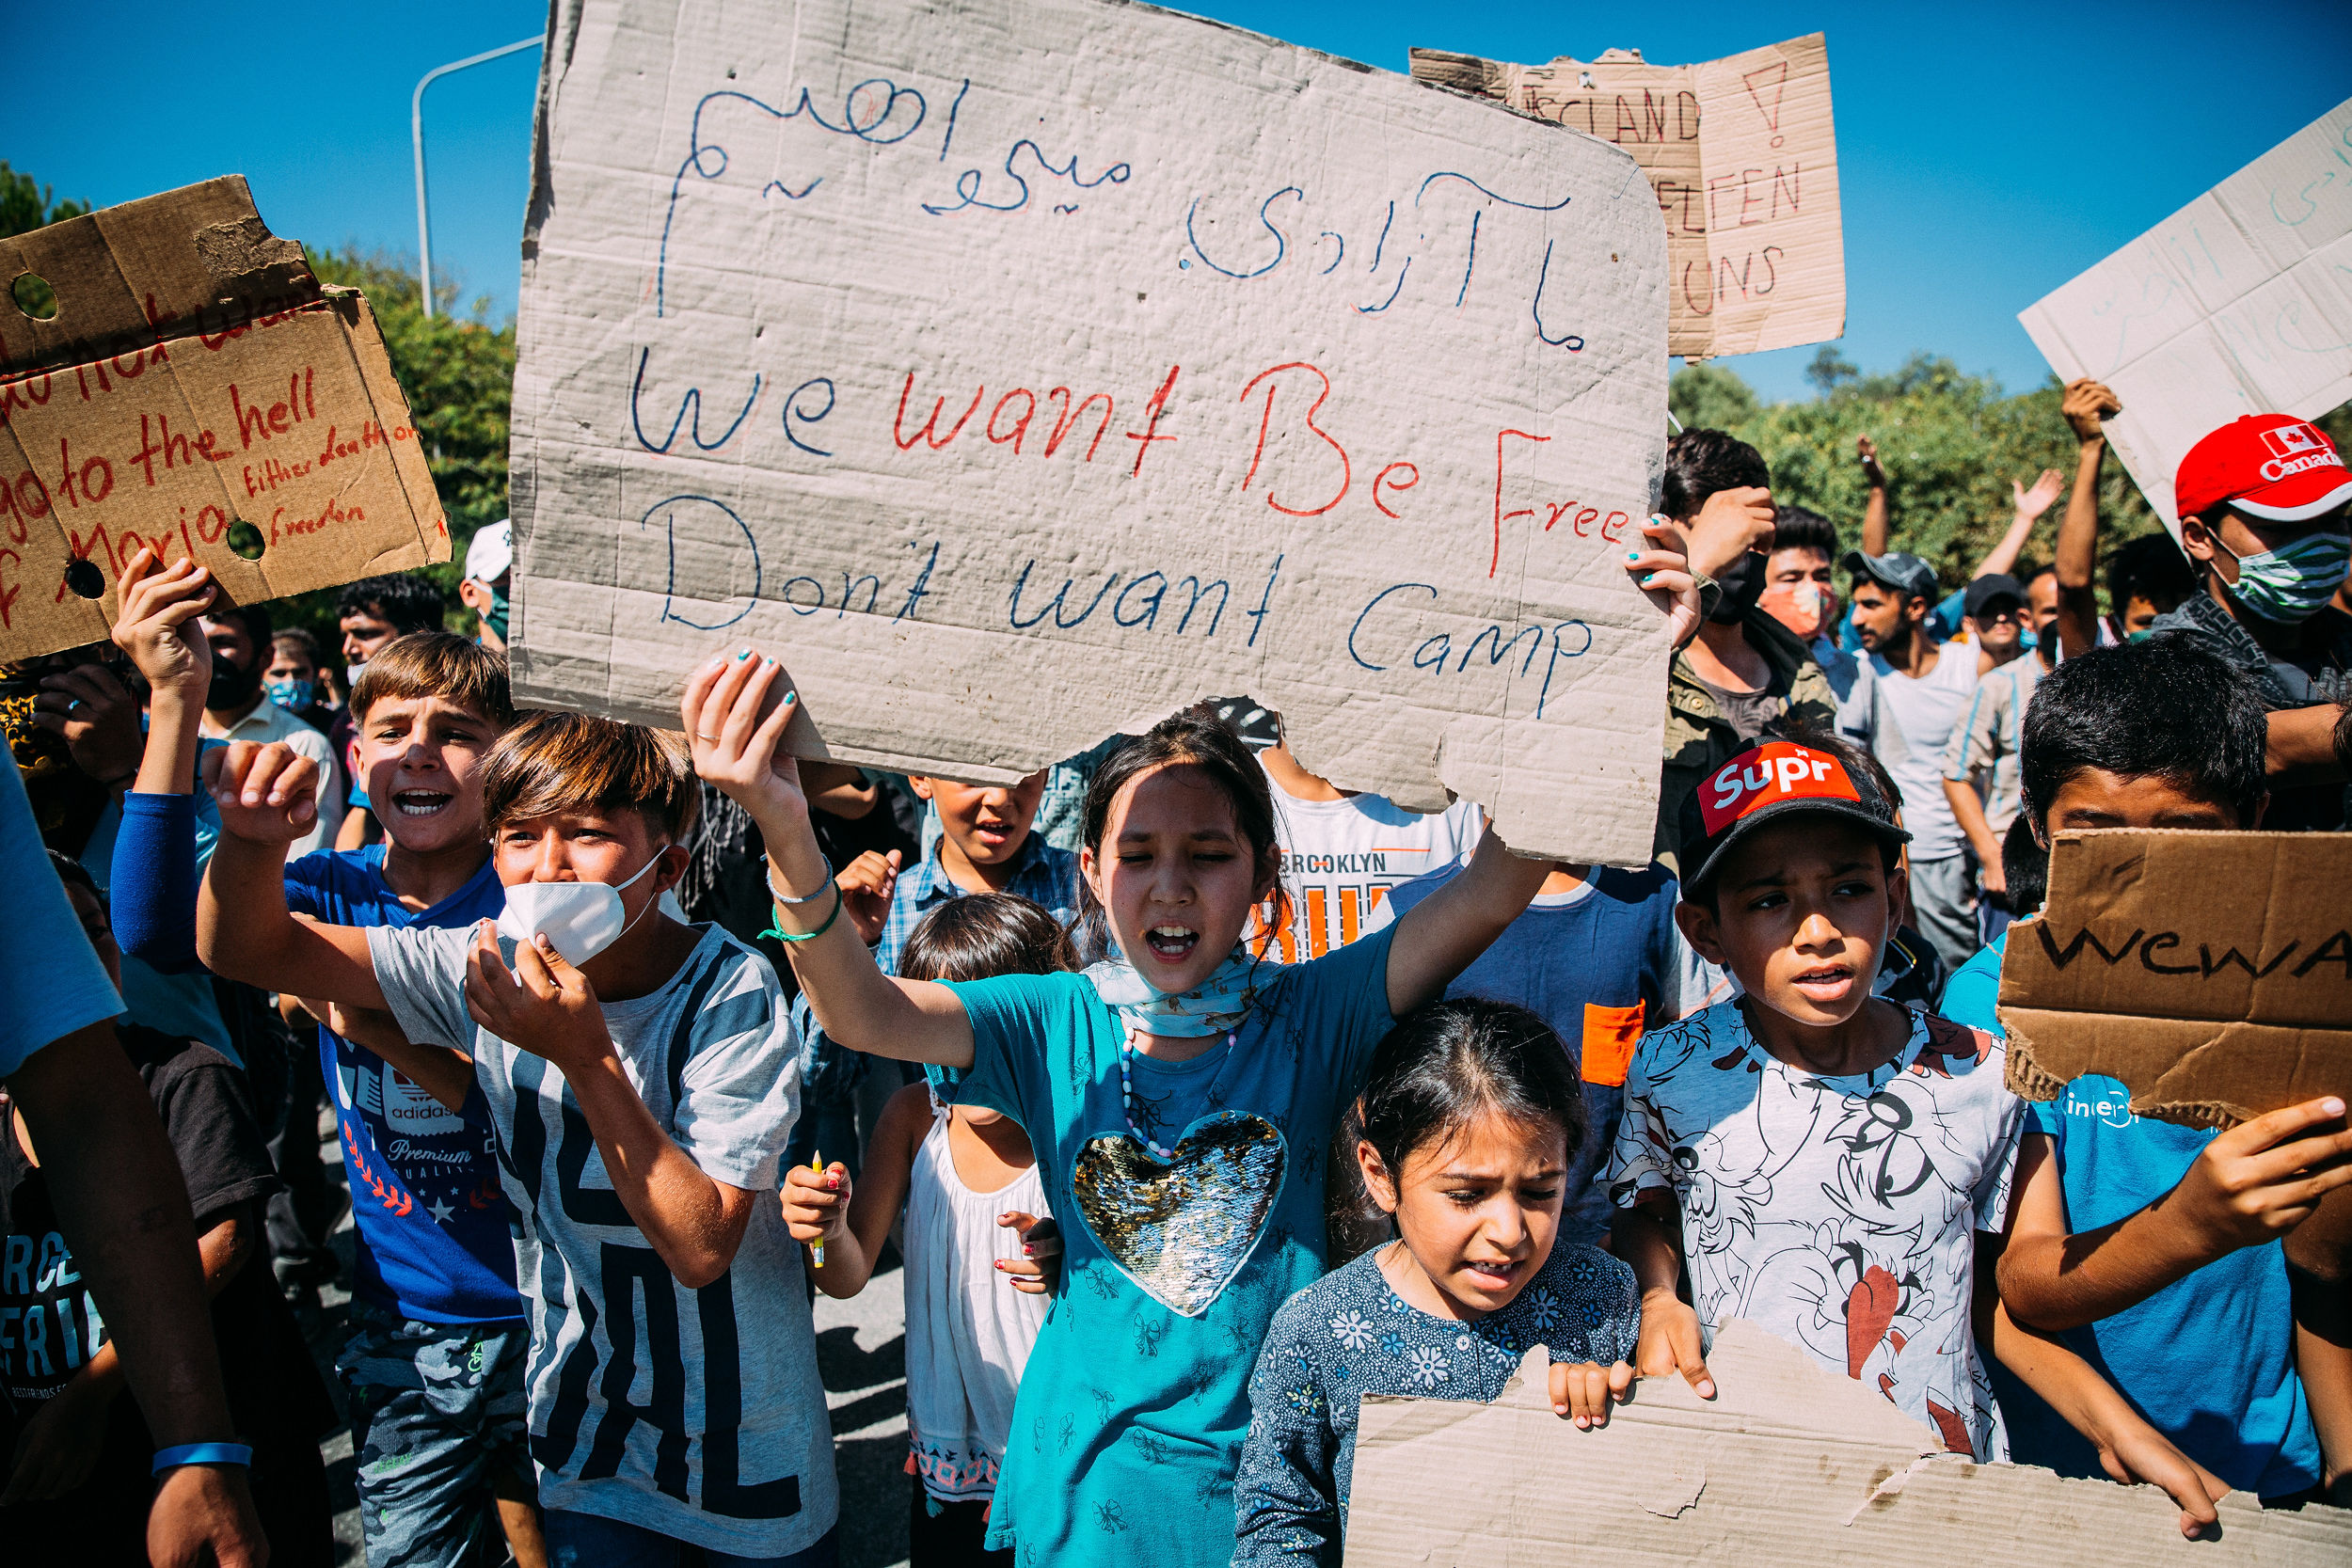 Menschen protestieren, ein Kind hält ein Schild mit der Aufschrift "We want be free, dont want camo"